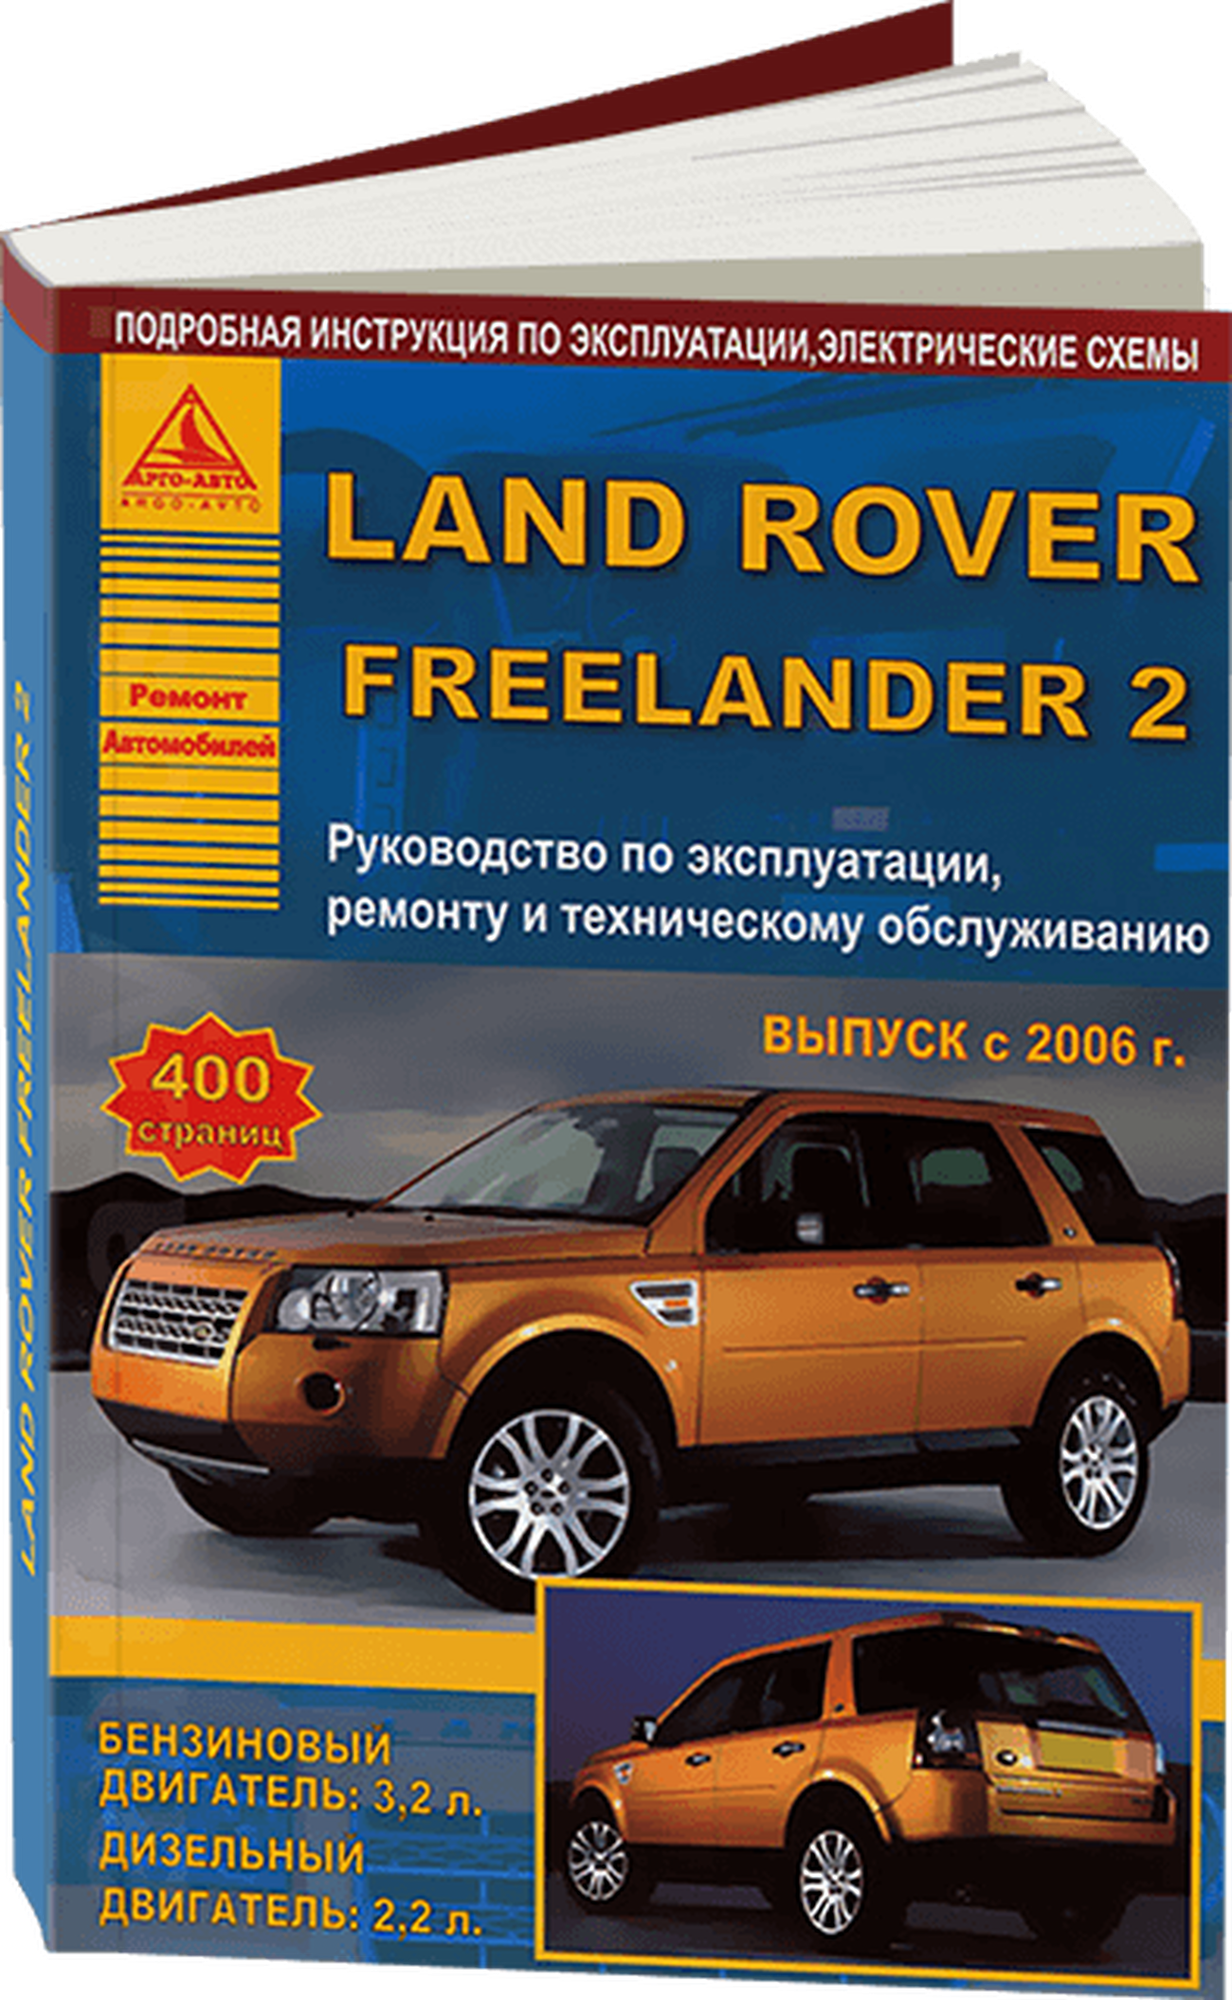 Автокнига: руководство / инструкция по ремонту и эксплуатации LAND ROVER FREELANDER 2 (лэнд ровер фрилендер 2) бензин / дизель с 2006 года выпуска , 978-5-8245-0149-0, издательство Арго-Авто